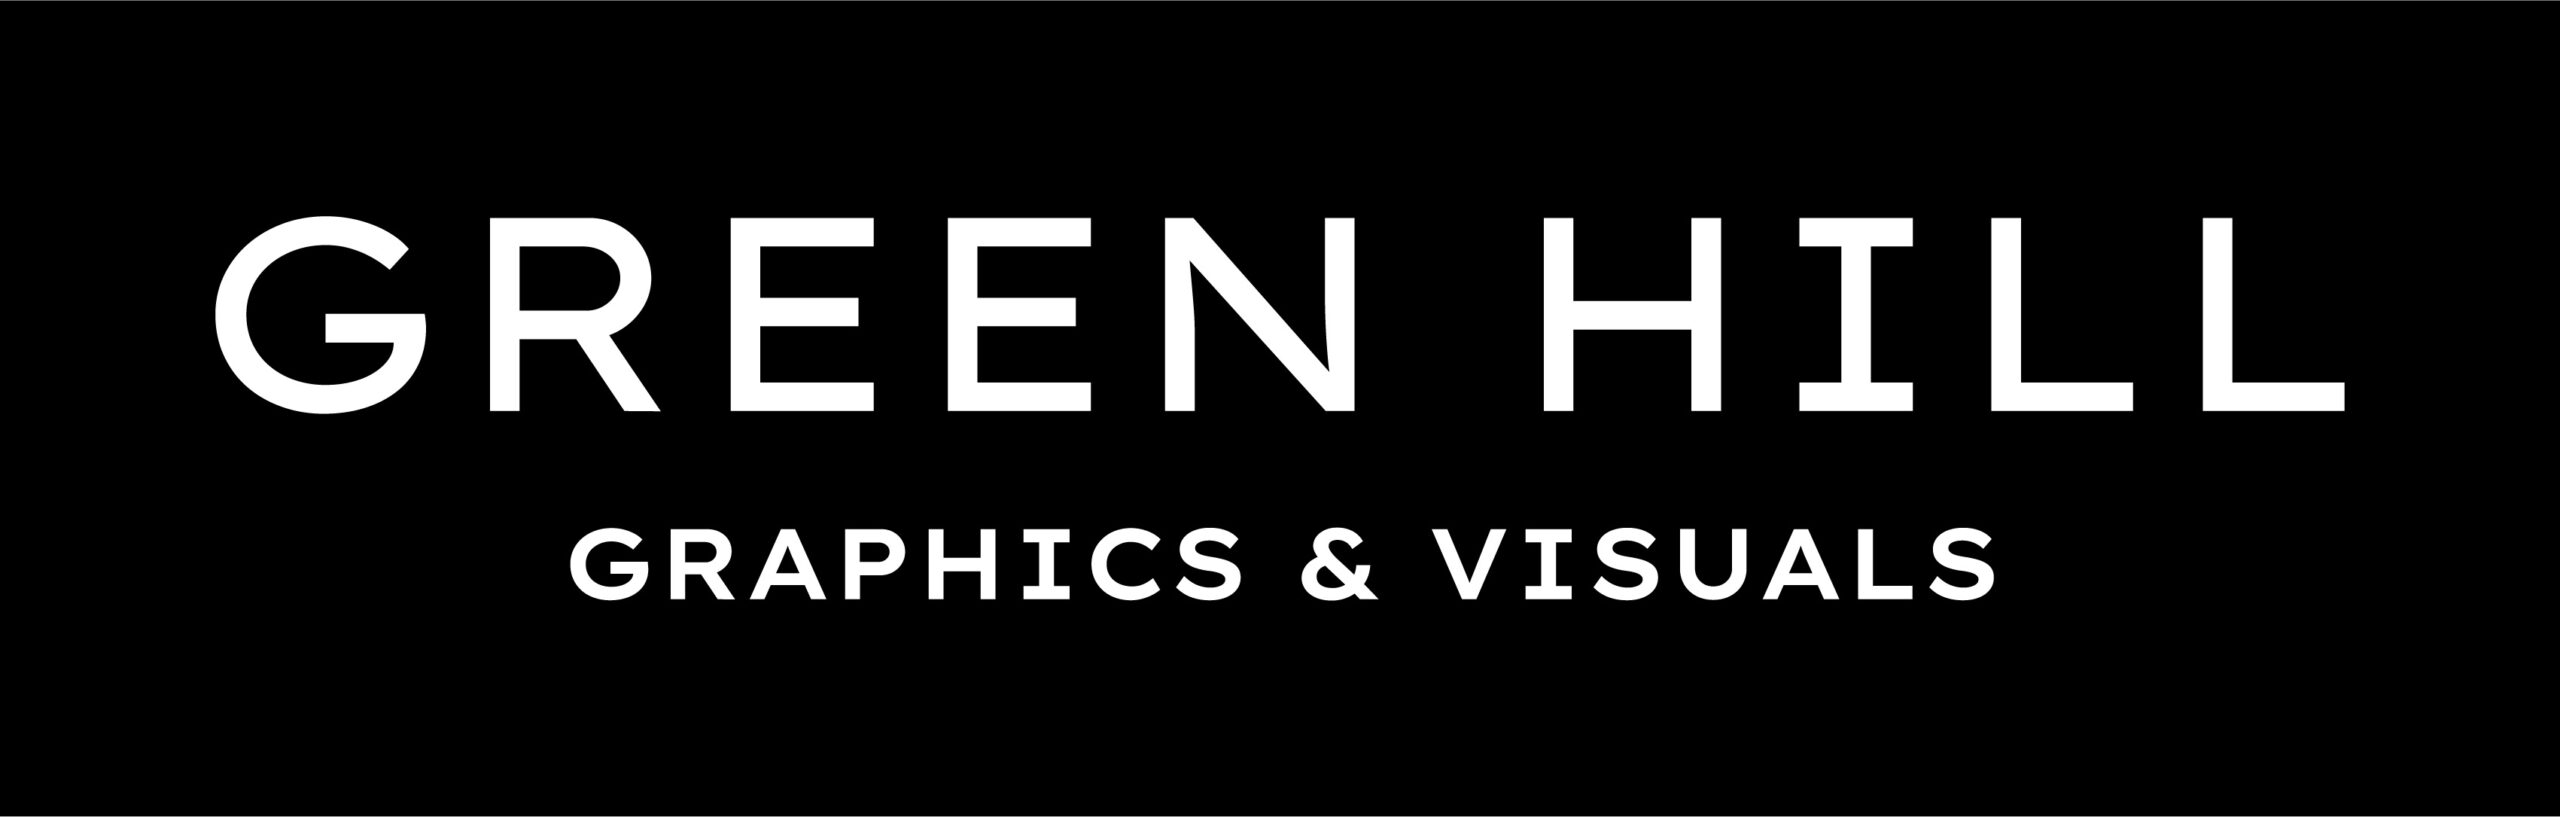 Green Hill Business Branding & Design